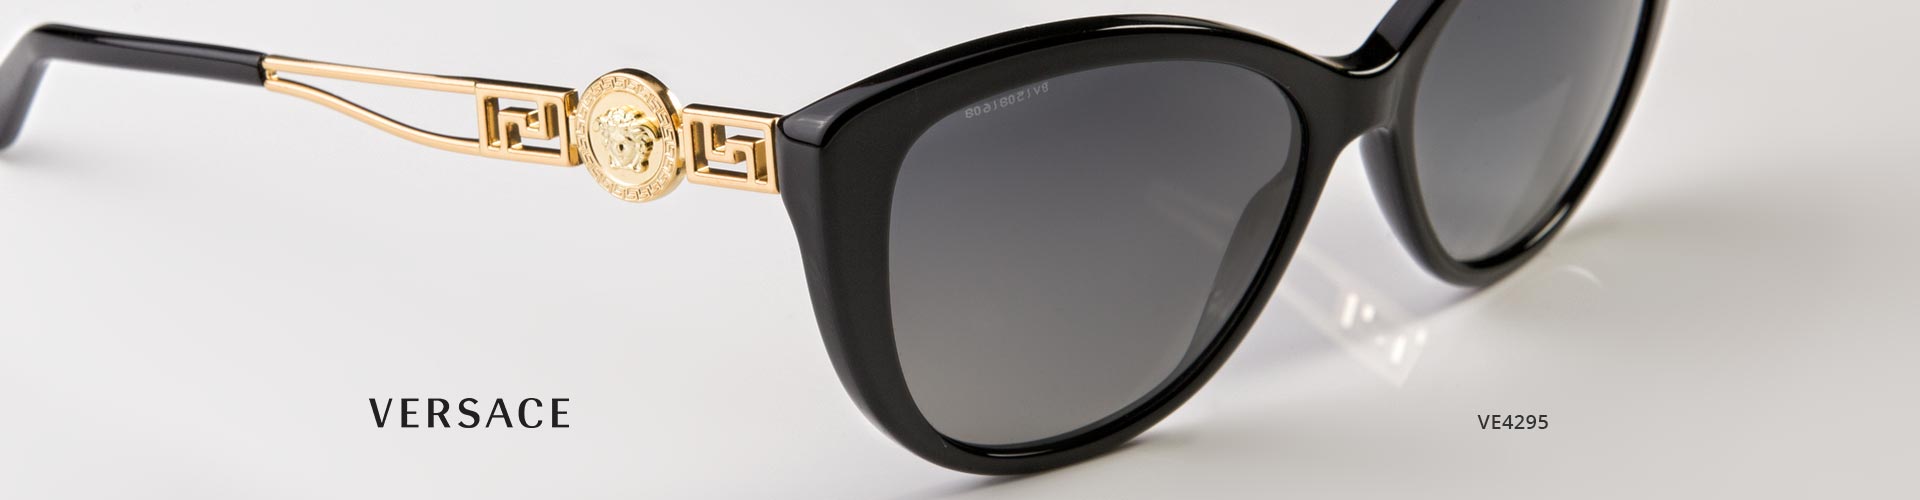 Shop Versace Prescription Sunglasses - featuring VE4295